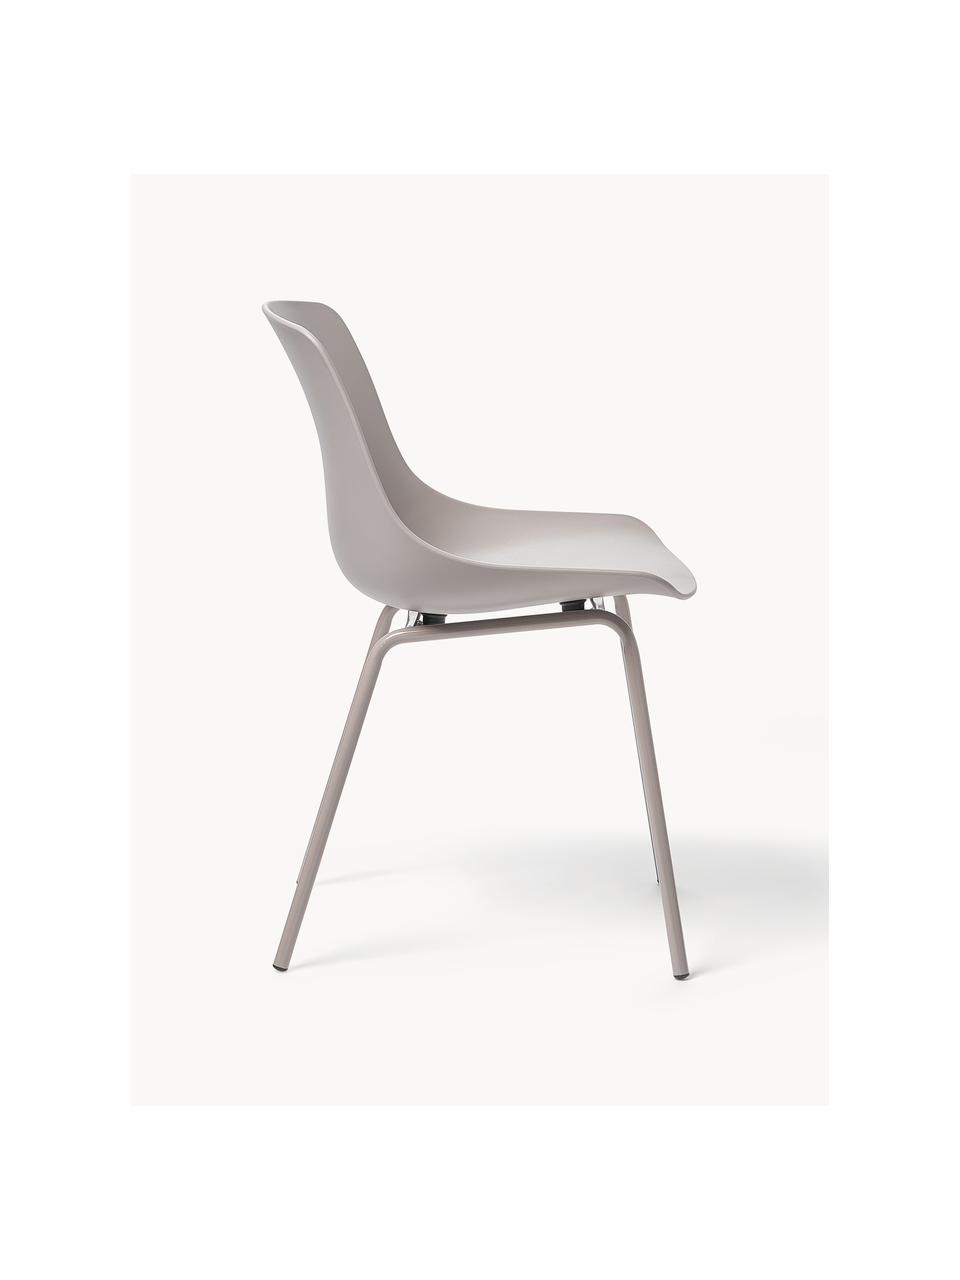 Krzesło z tworzywa sztucznego z metalowymi nogami Joe, 2 szt., Nogi: metal malowany proszkowo, Jasny szary, S 46 x G 53 cm